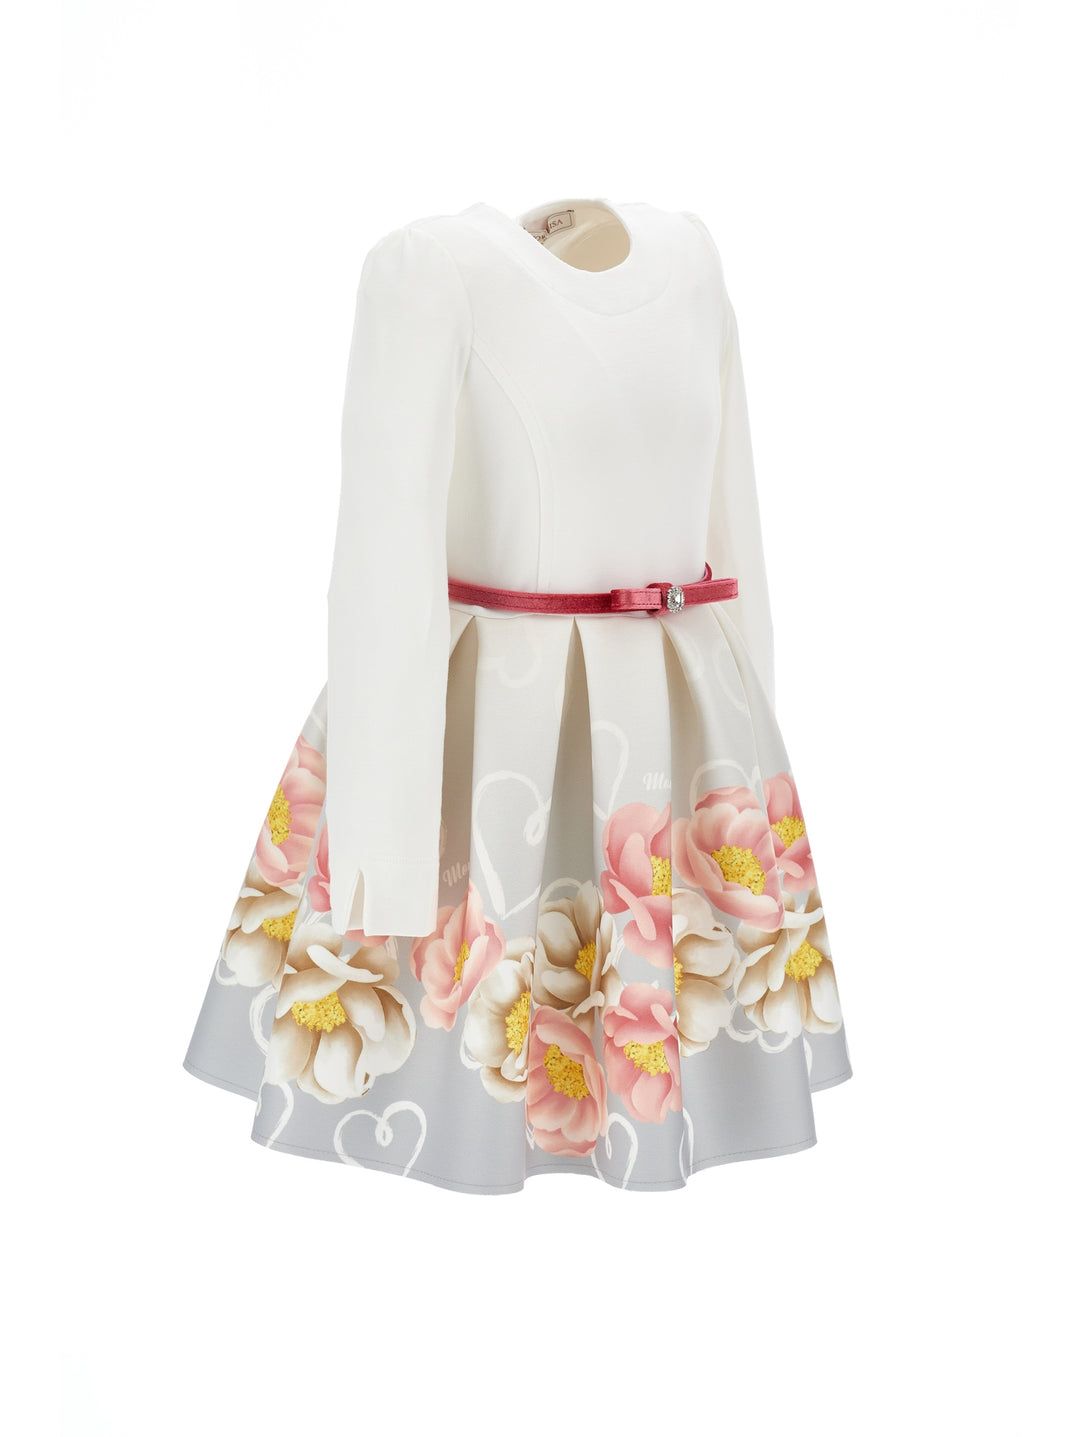 Robe fille opaque blanche et multicolore à imprimé fleuri